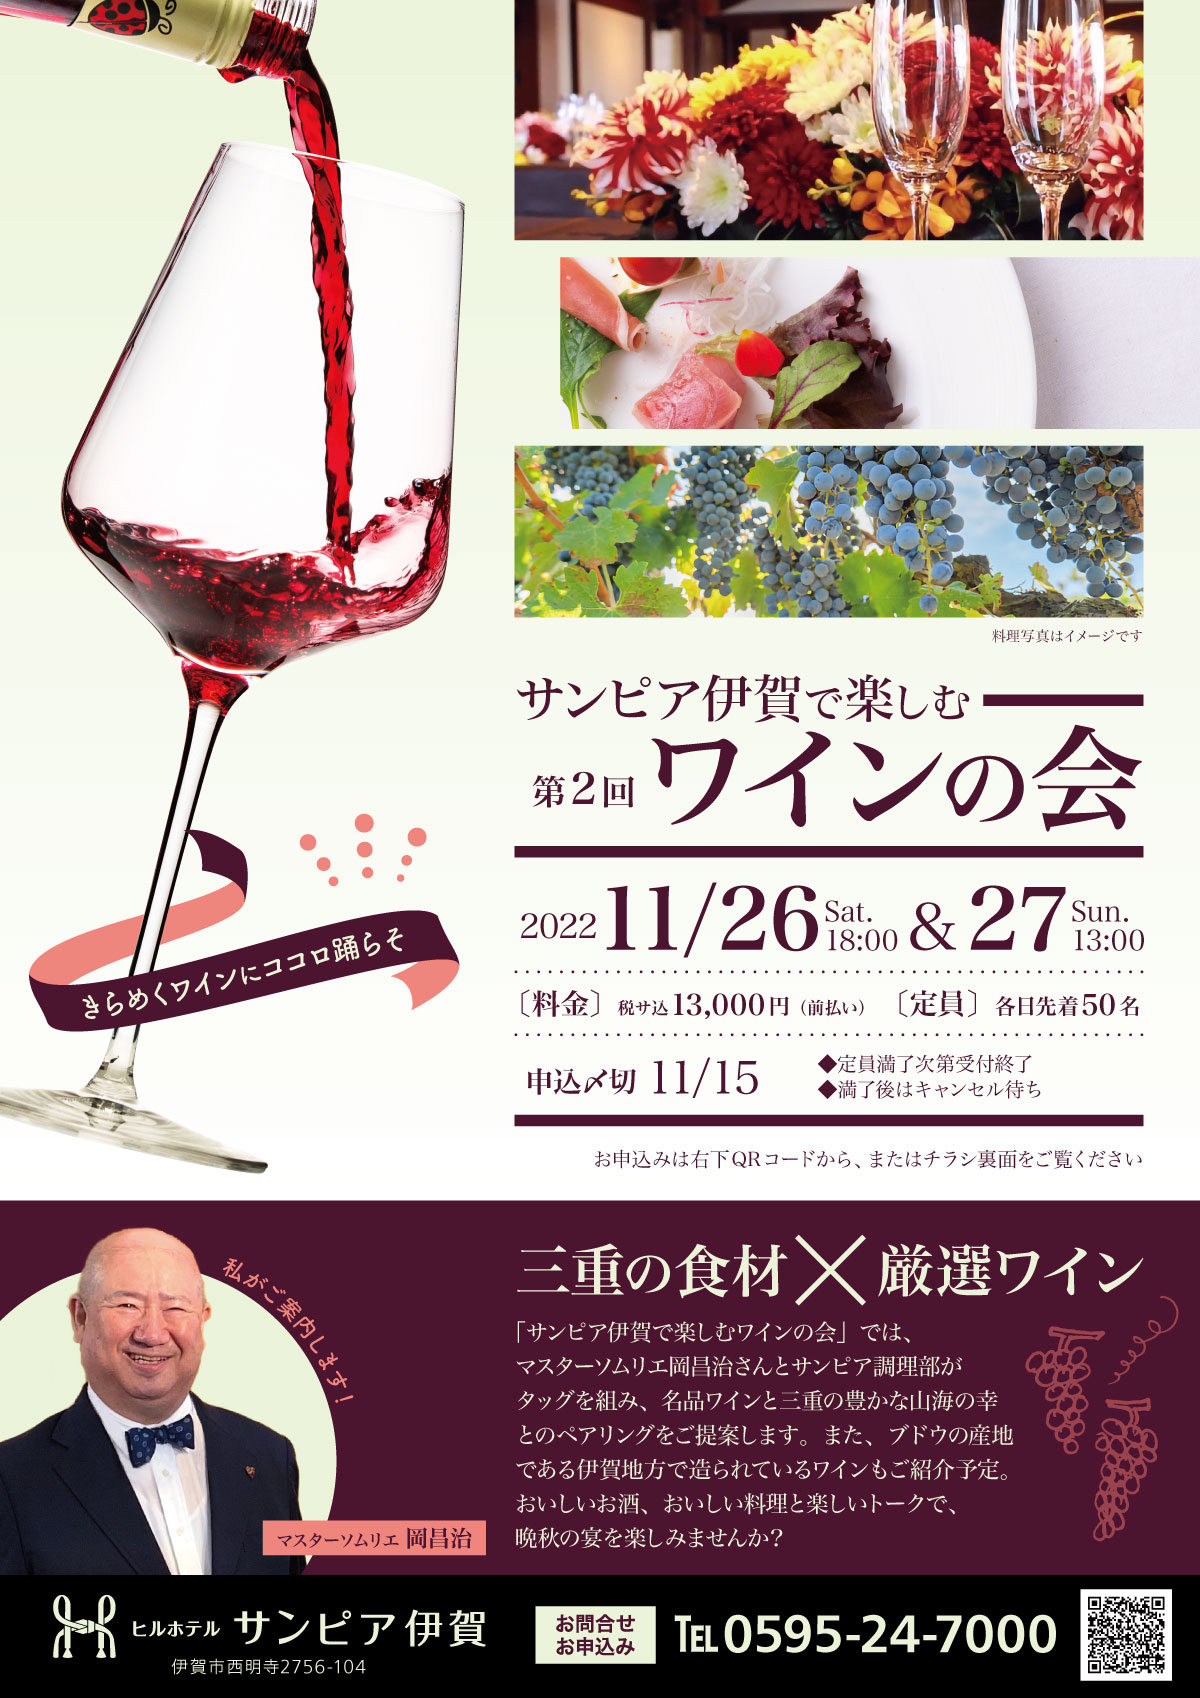 「きらめくワインにココロ踊らそ」。サンピア伊賀で楽しむワインの会開催。2022年11月26日18時からの回と、27日13時からの回がございます。定員は各日先着50名様。料金は税サ込13,000円。